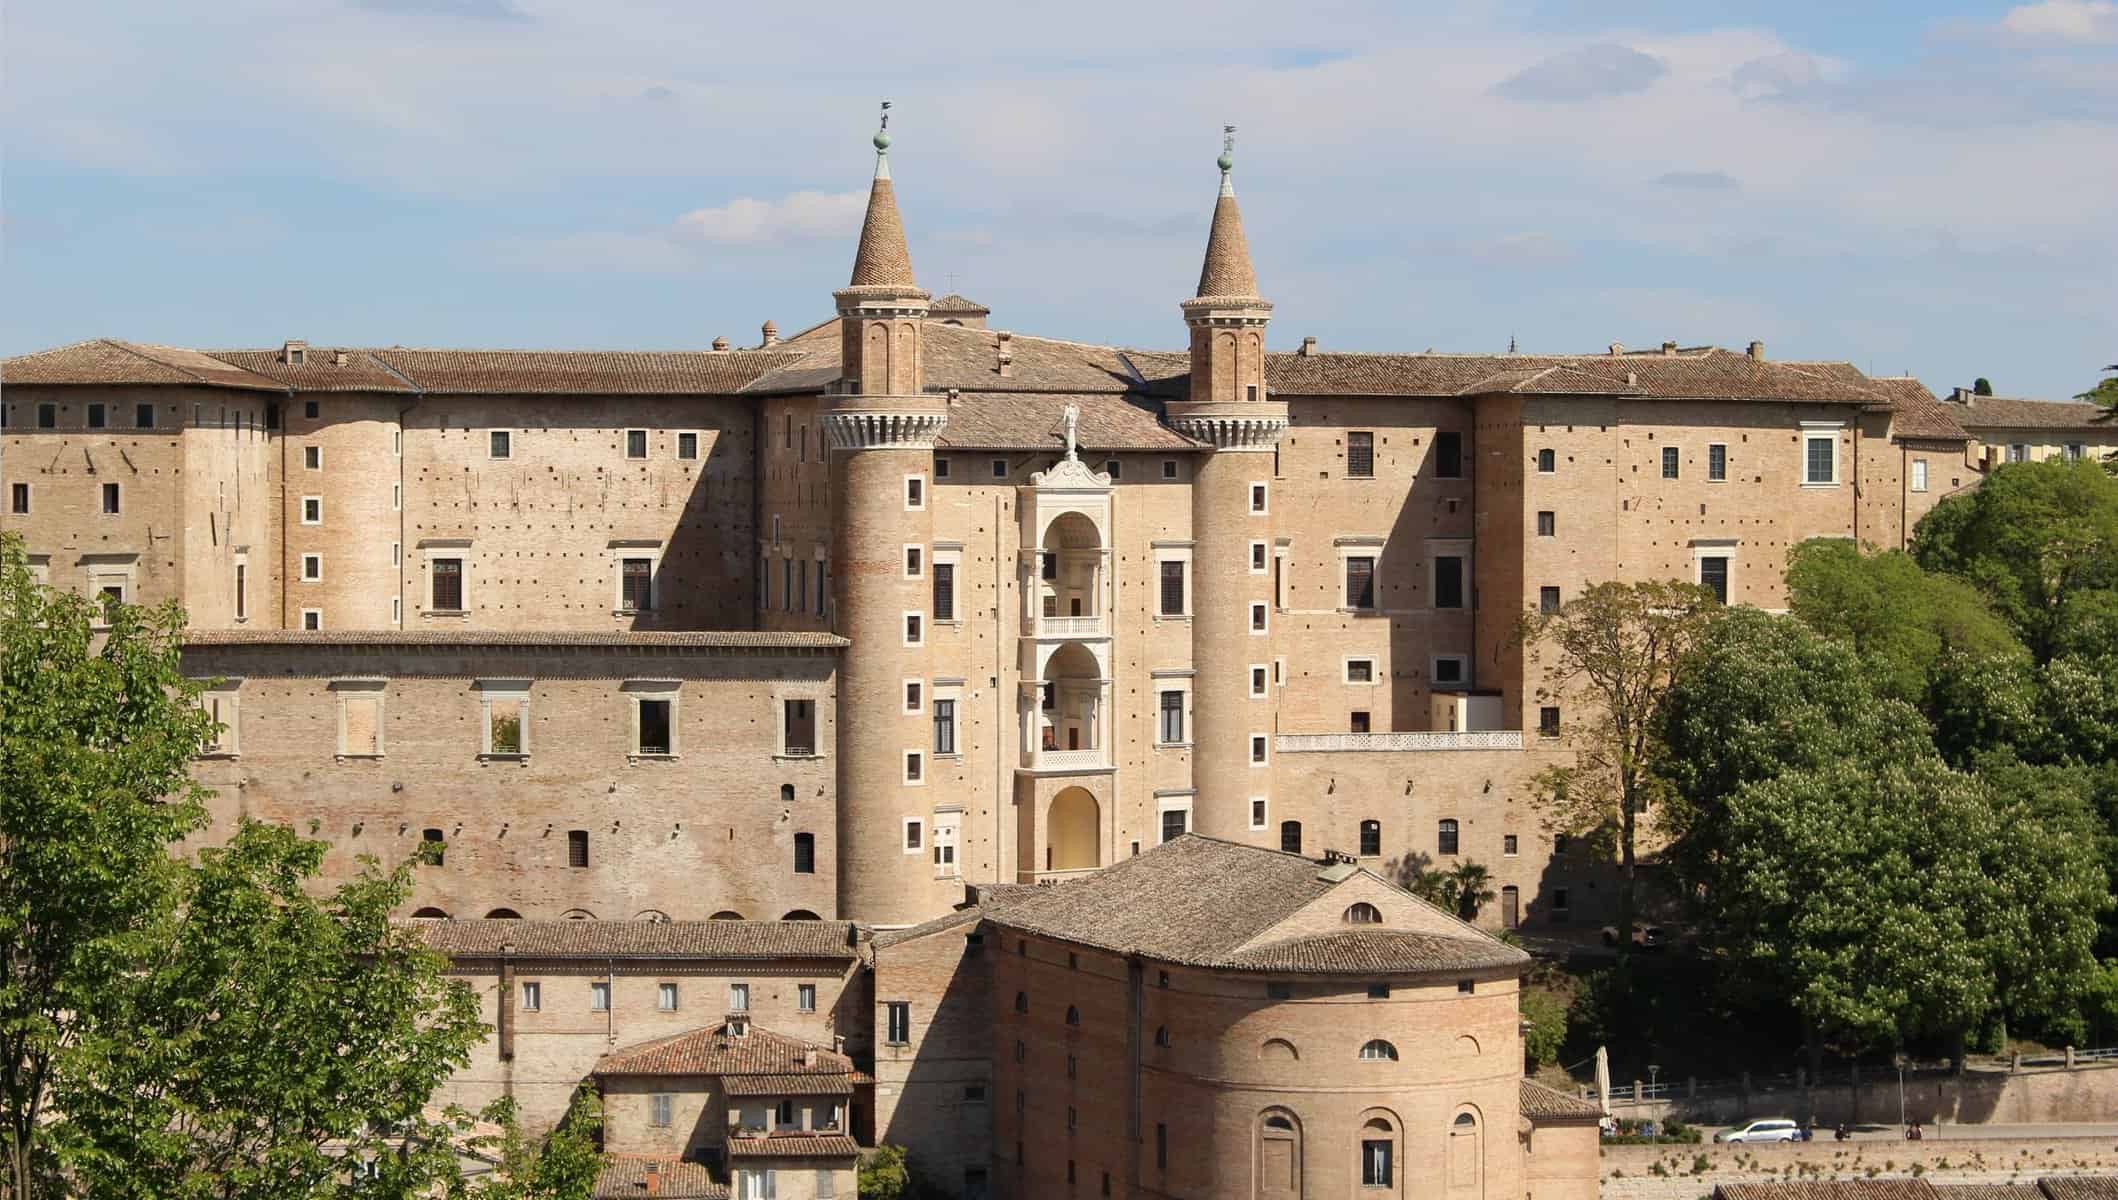 Palazzo ducale di Urbino - IAWA